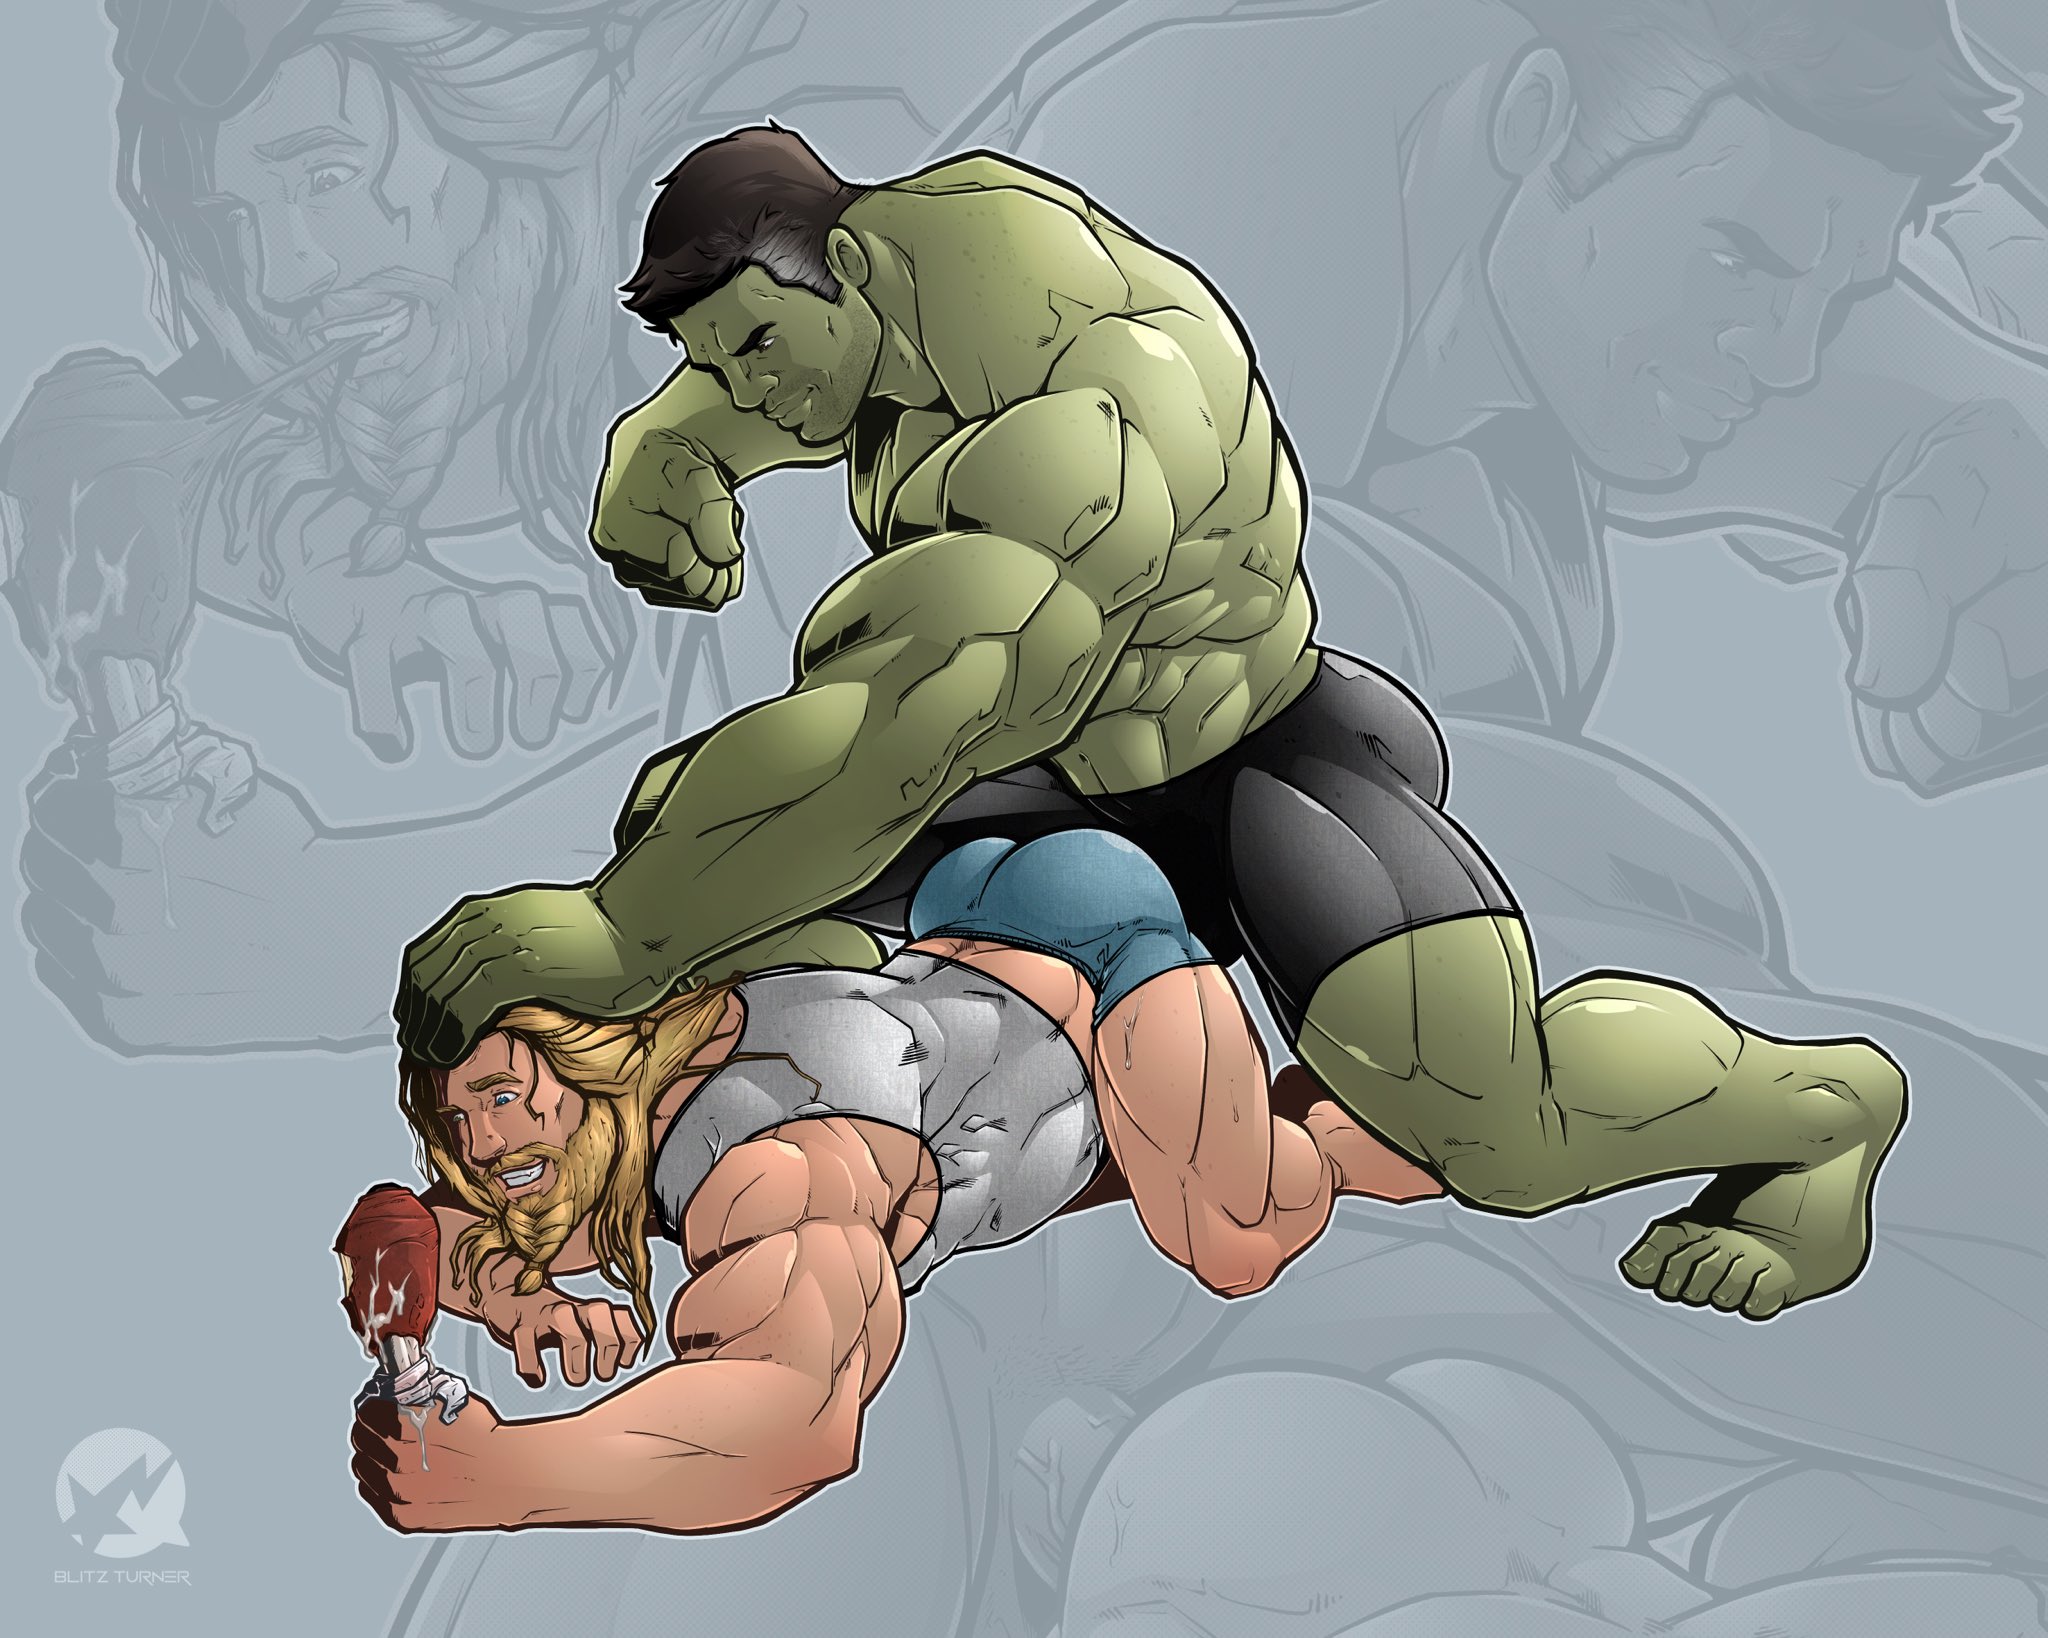 Hulk fanfic